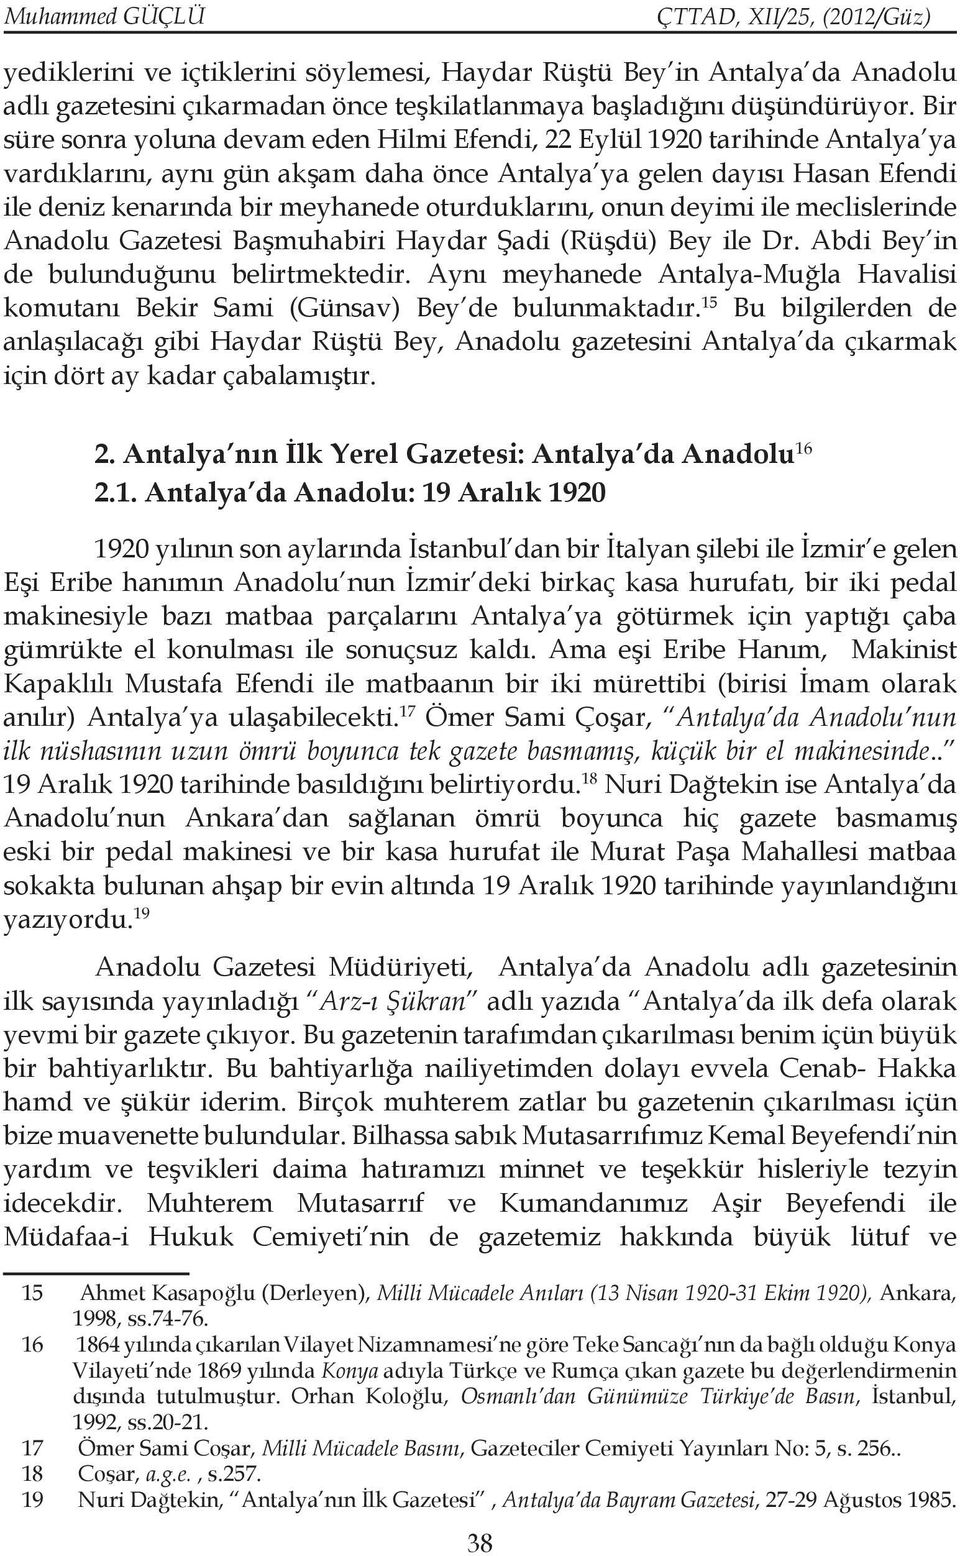 oturduklarını, onun deyimi ile meclislerinde Anadolu Gazetesi Başmuhabiri Haydar Şadi (Rüşdü) Bey ile Dr. Abdi Bey in de bulunduğunu belirtmektedir.